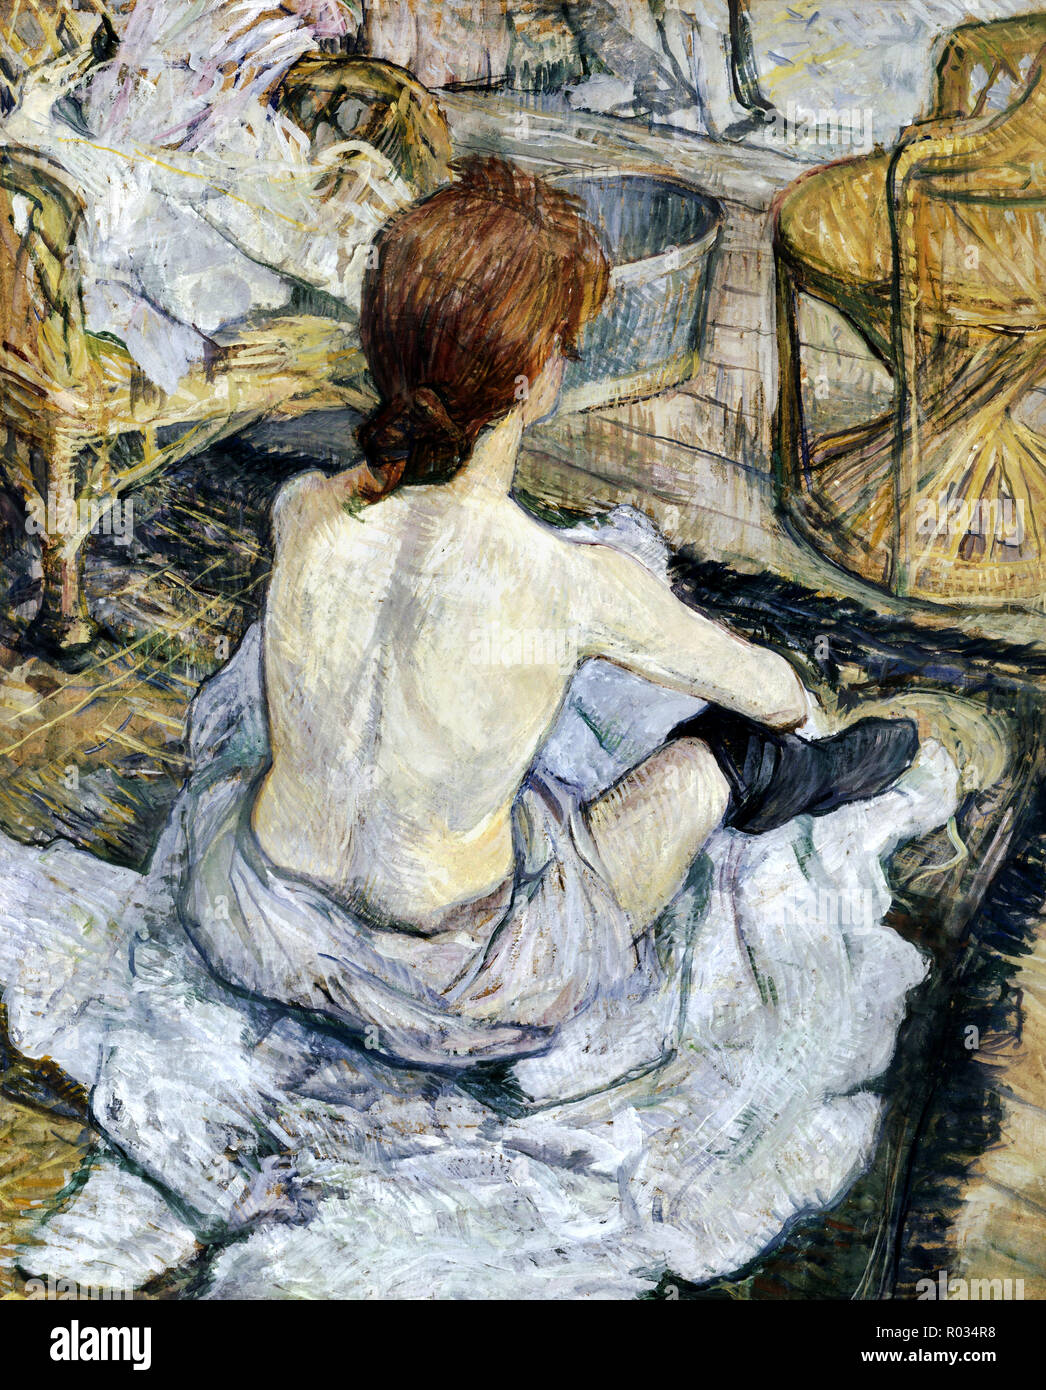 Henri de Toulouse-Lautrec, Rousse, auch bekannt als La Toilette, 1889, Öl  auf Pappe, Musée d'Orsay, Paris, Frankreich Stockfotografie - Alamy